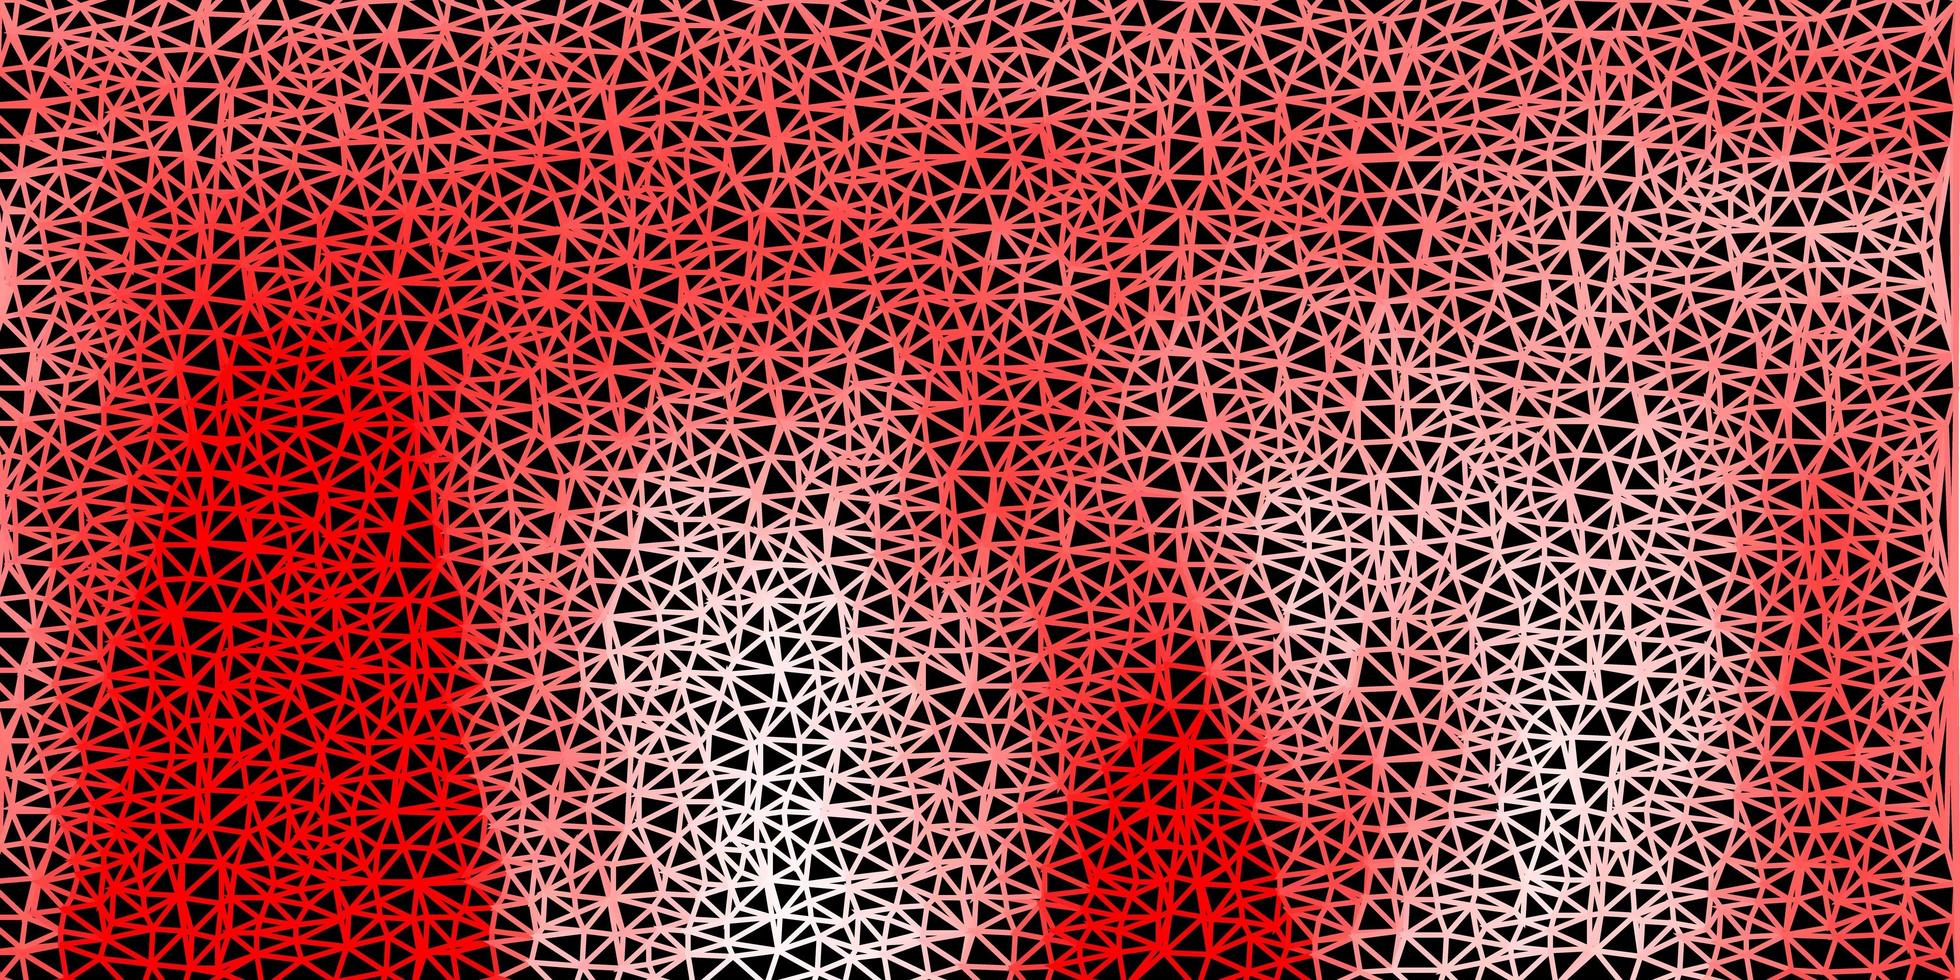 motif de triangle abstrait vecteur rouge clair.